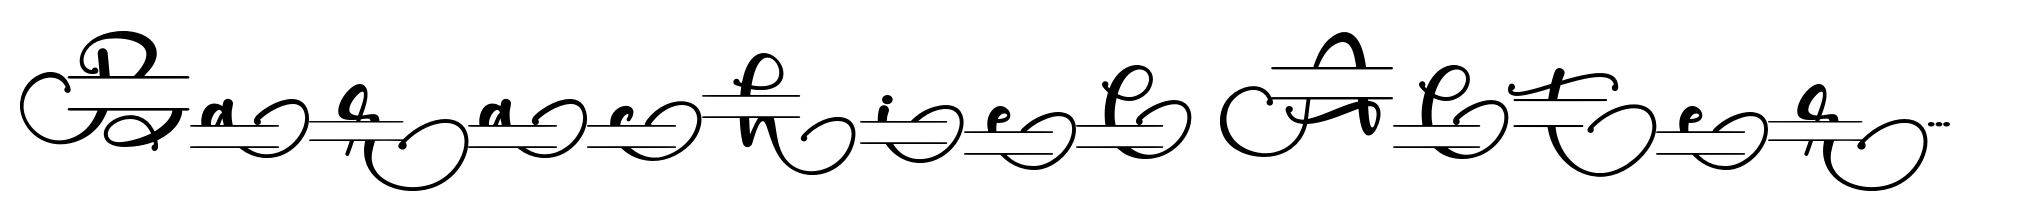 Barachiel Alternate Monogram image